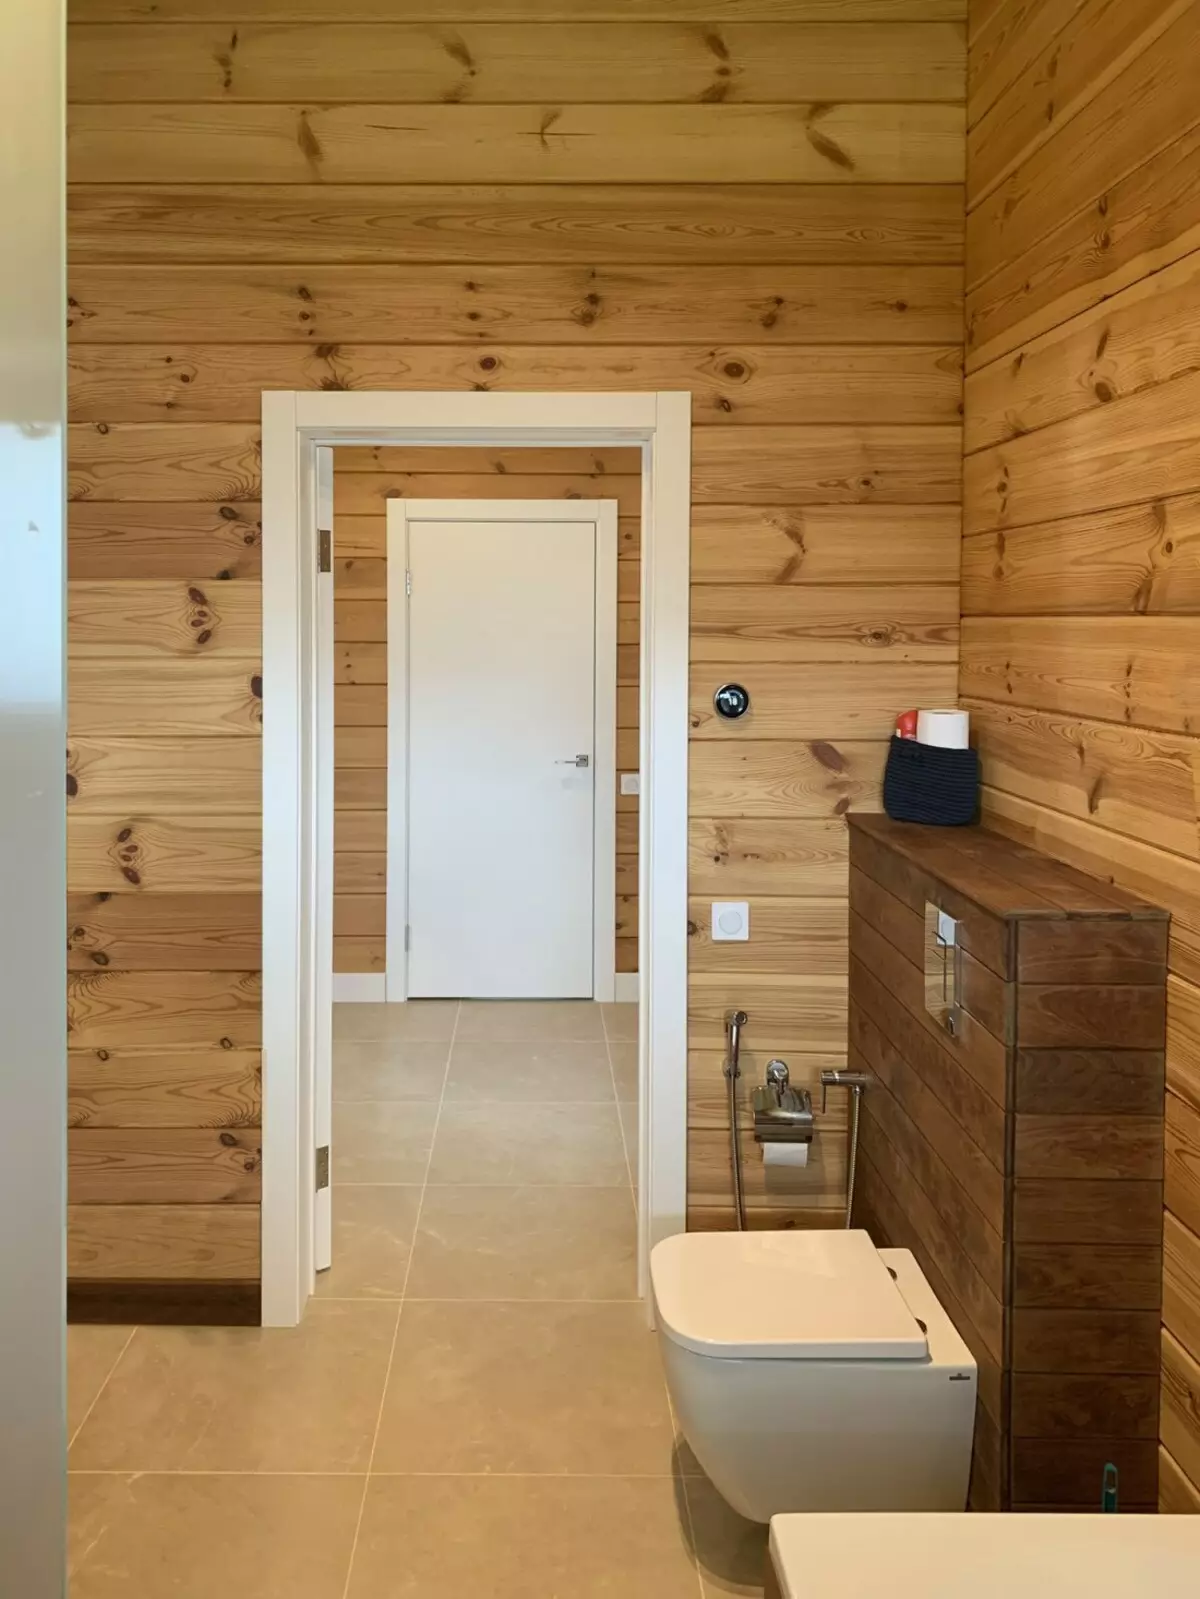 Badkamer in een houten huis (76 foto's): Kamerontwerp in een huis van een bar in het land, voorbeelden van vloerafwerking, ventilatie-regelingen 10475_20